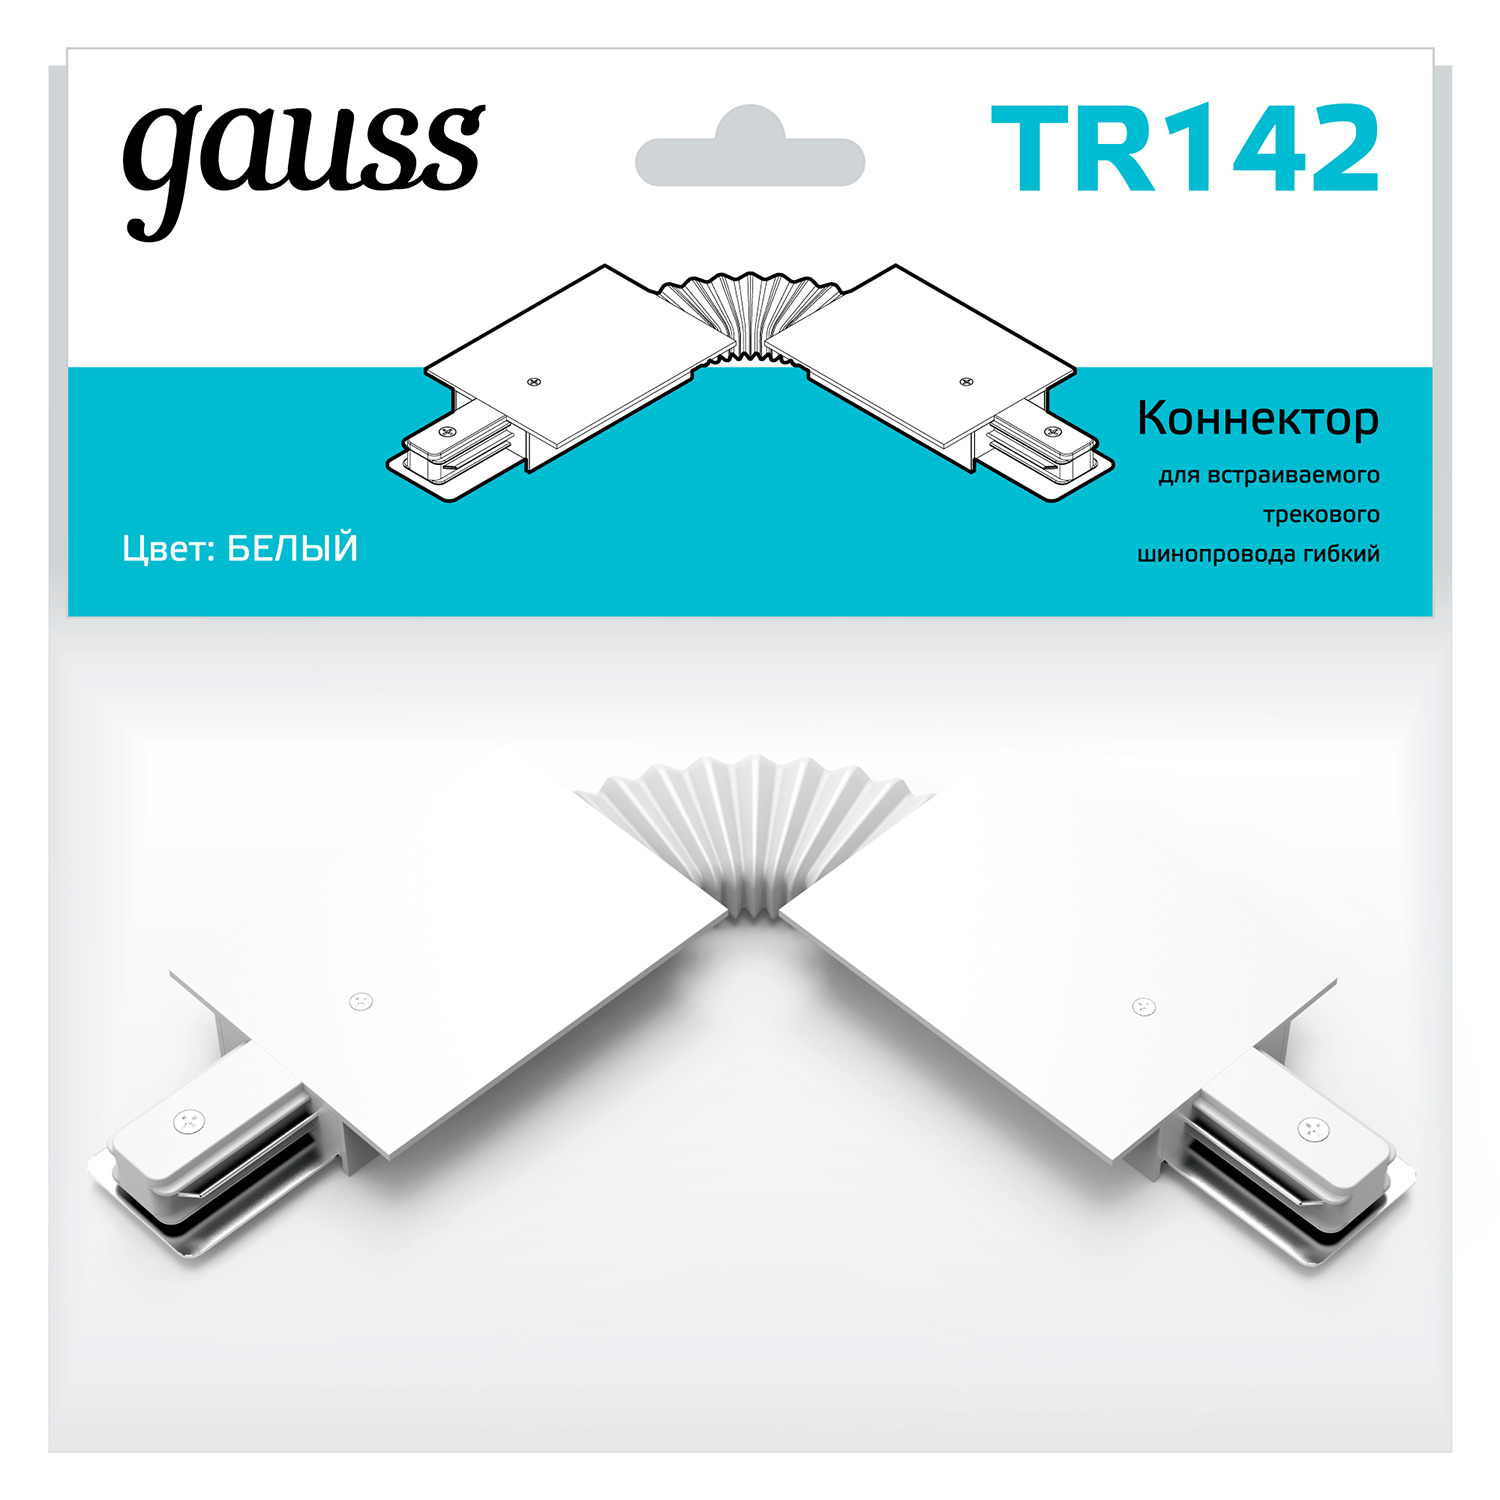 Коннектор Gauss для встраиваемых трековых шинопроводов гибкий (I) белый коннектор gauss для трековых шинопроводов гибкий i белый